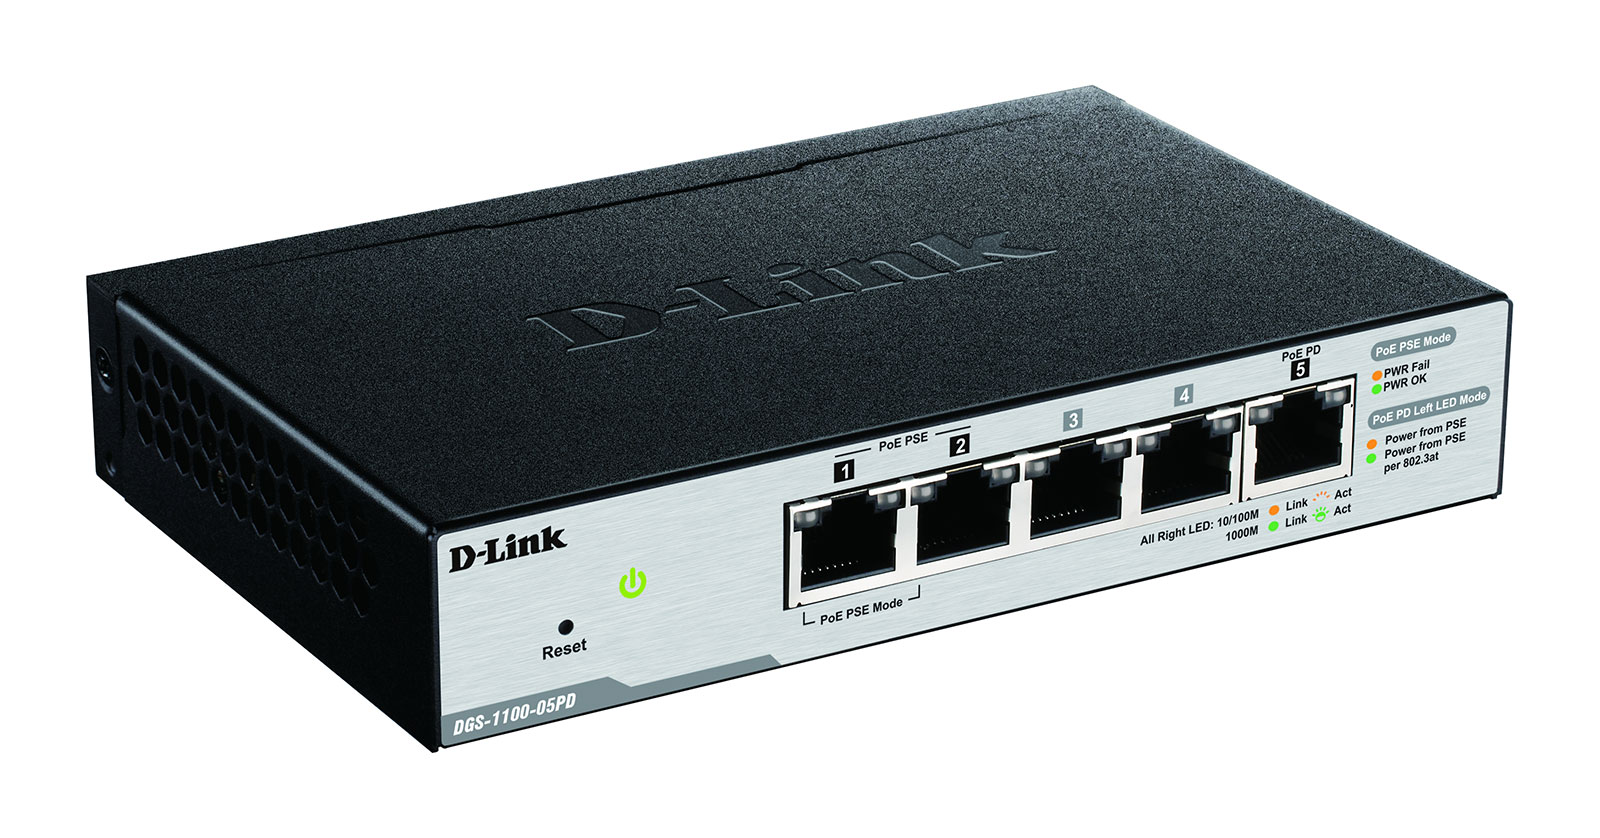 D-Link 5-Port Gigabit PoE Switch DGS-1100-05PD